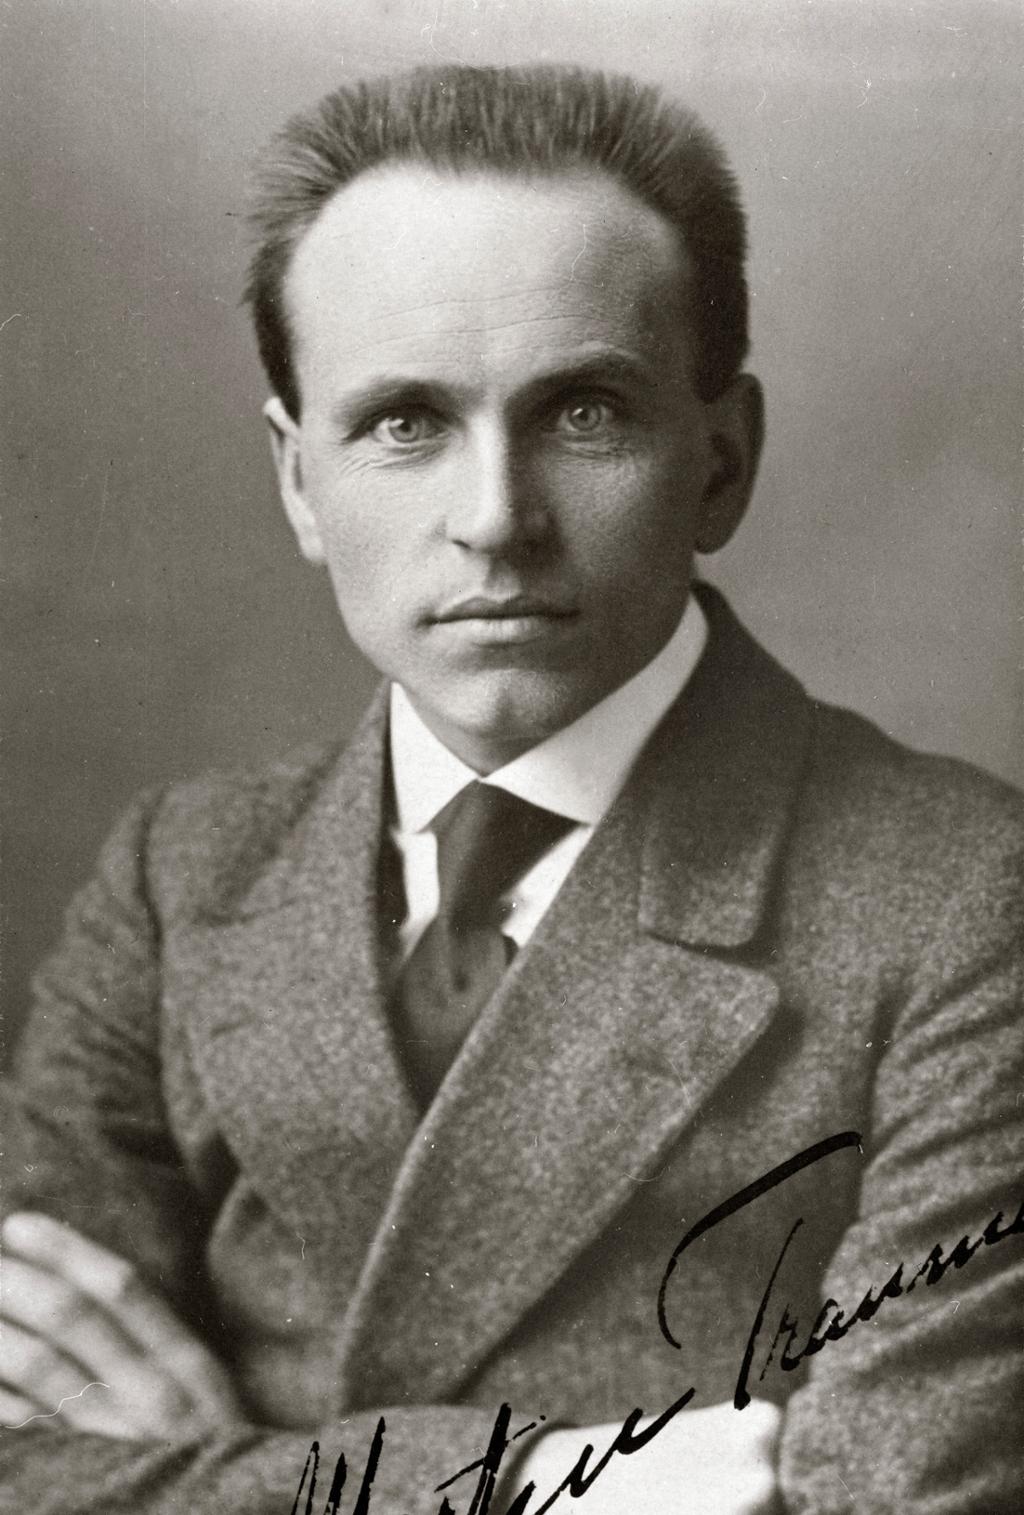 Portrett av mann i ulldress, med hvit skjorte og slips. Han har armene i kryss. Mannen er Martin Tranmæl. Foto. 